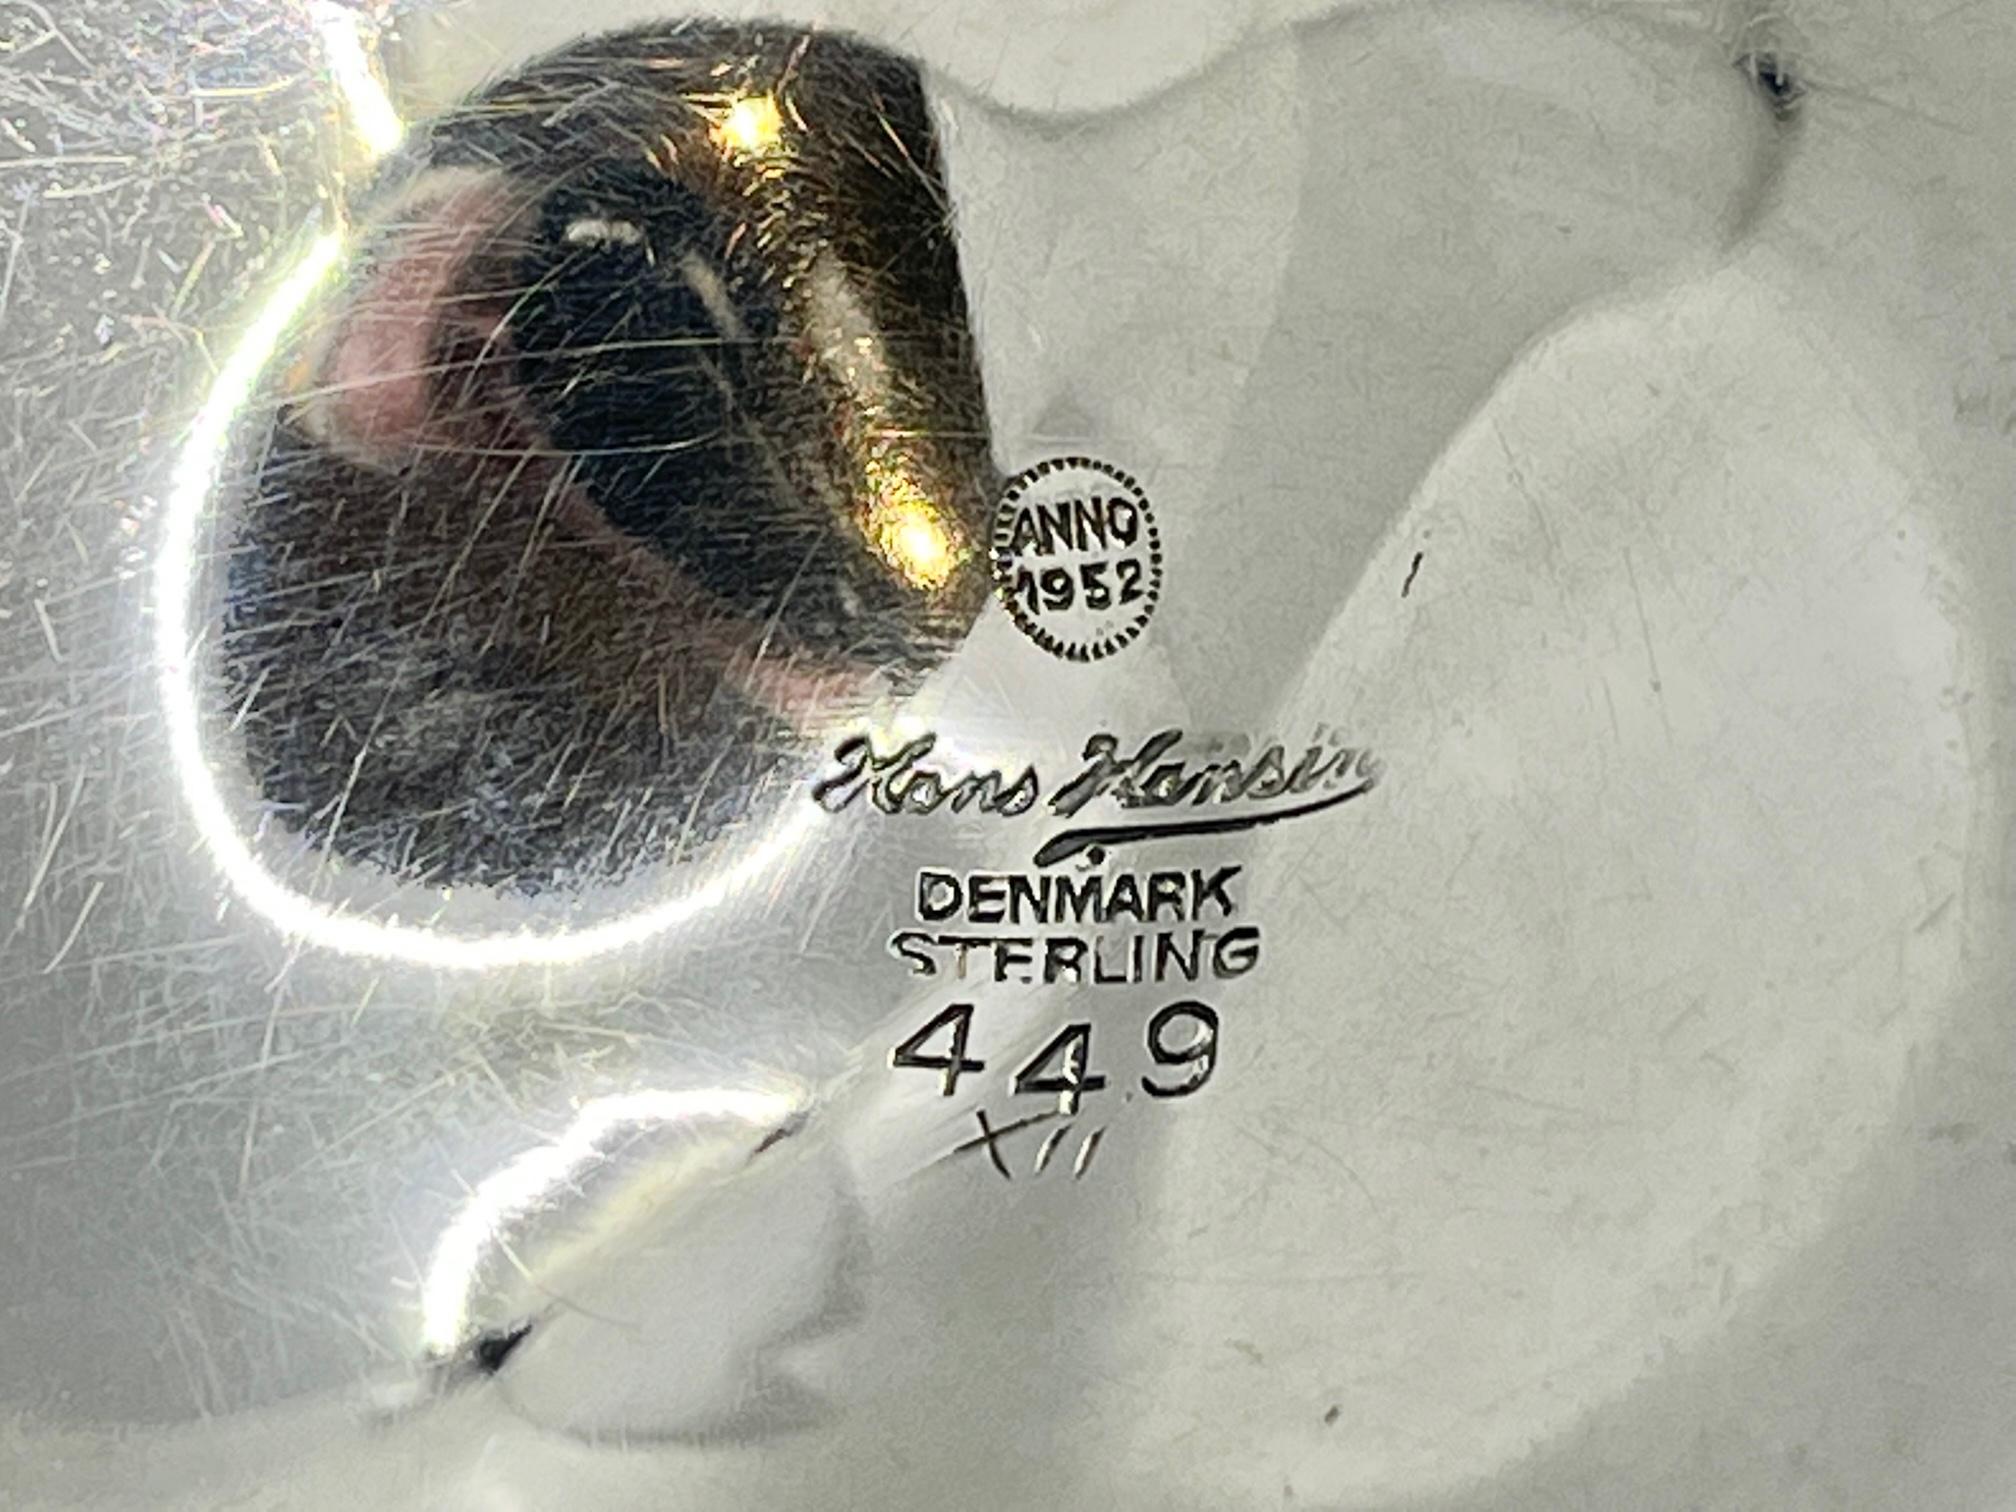 Ein Marmeladenglas aus Sterlingsilber und Steingut, Design #449 von Karl Gustav Hansen aus dem Jahr 1952, hergestellt von Hans Hansen aus Kolding, Dänemark. Das Steingutgefäß ist ganz, keine Chips oder Risse.

Zusätzliche Informationen:
MATERIAL: